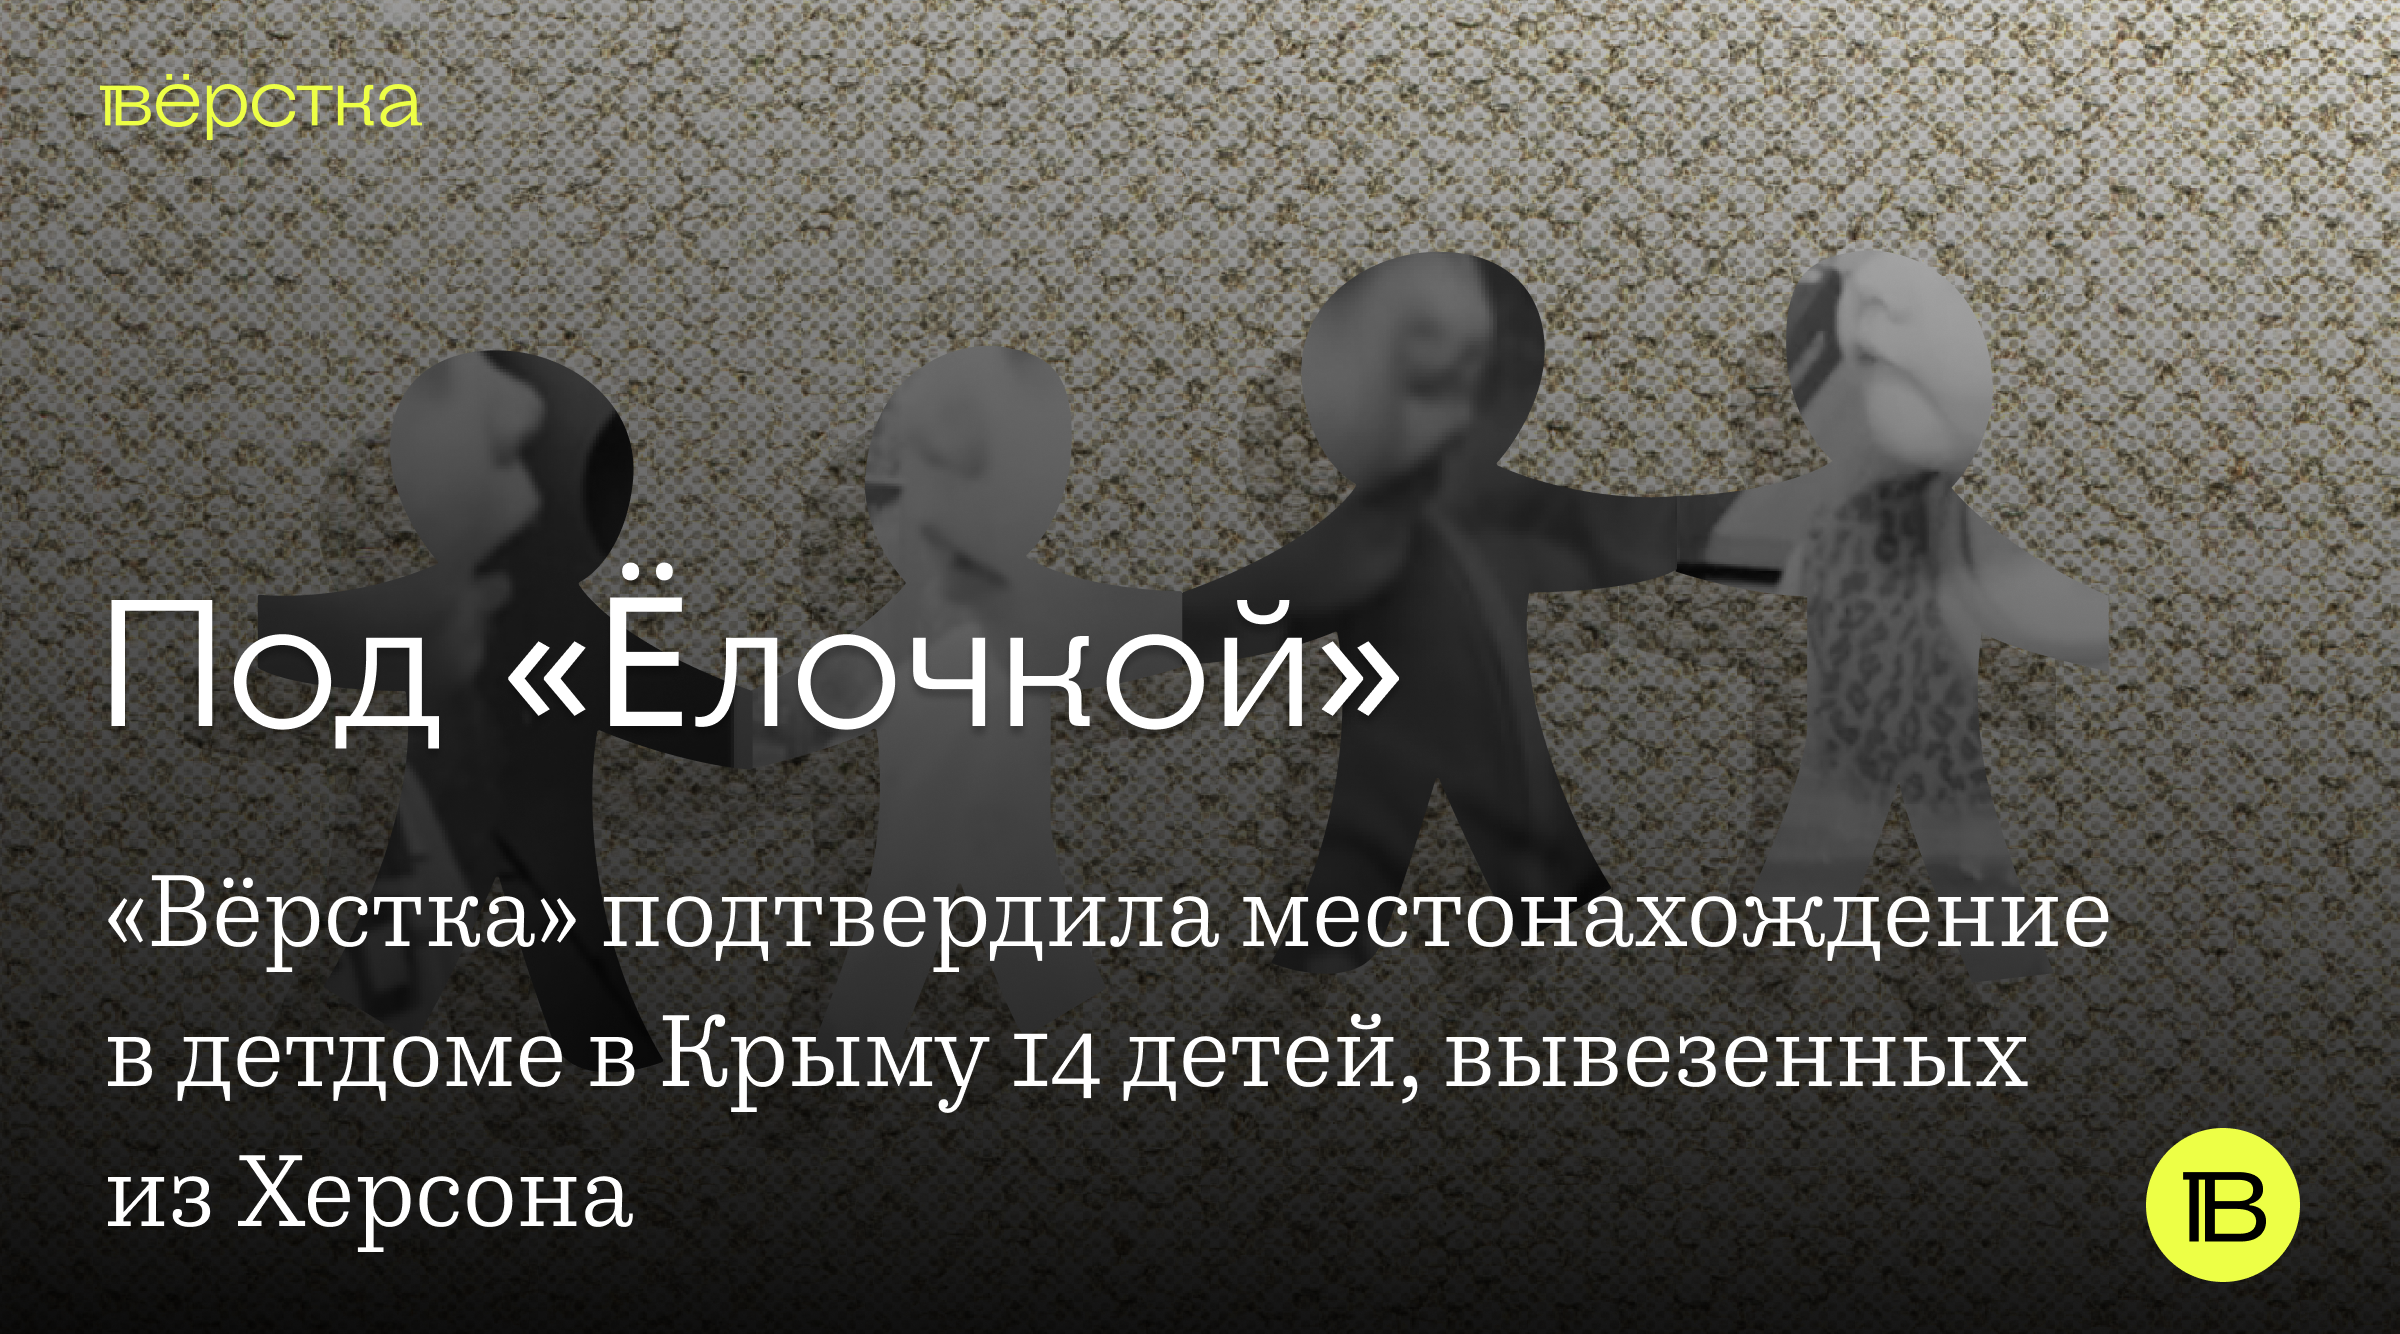 Российские власти вывезли не менее 14 сирот из Херсона младше пяти лет в крымский детдом «Ёлочка»